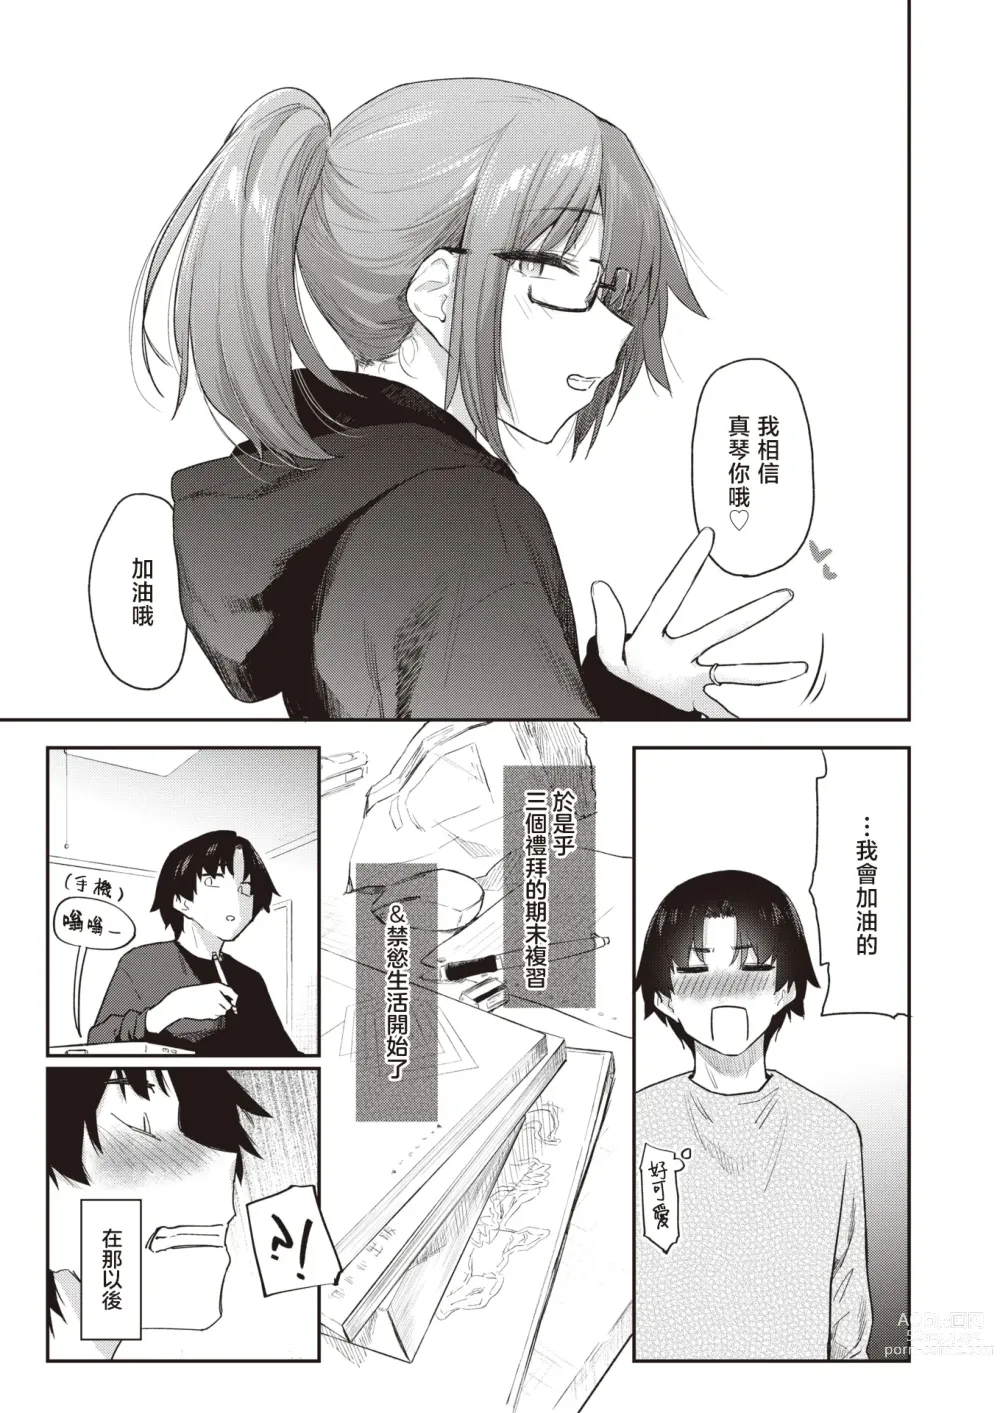 Page 10 of manga 绕道#2